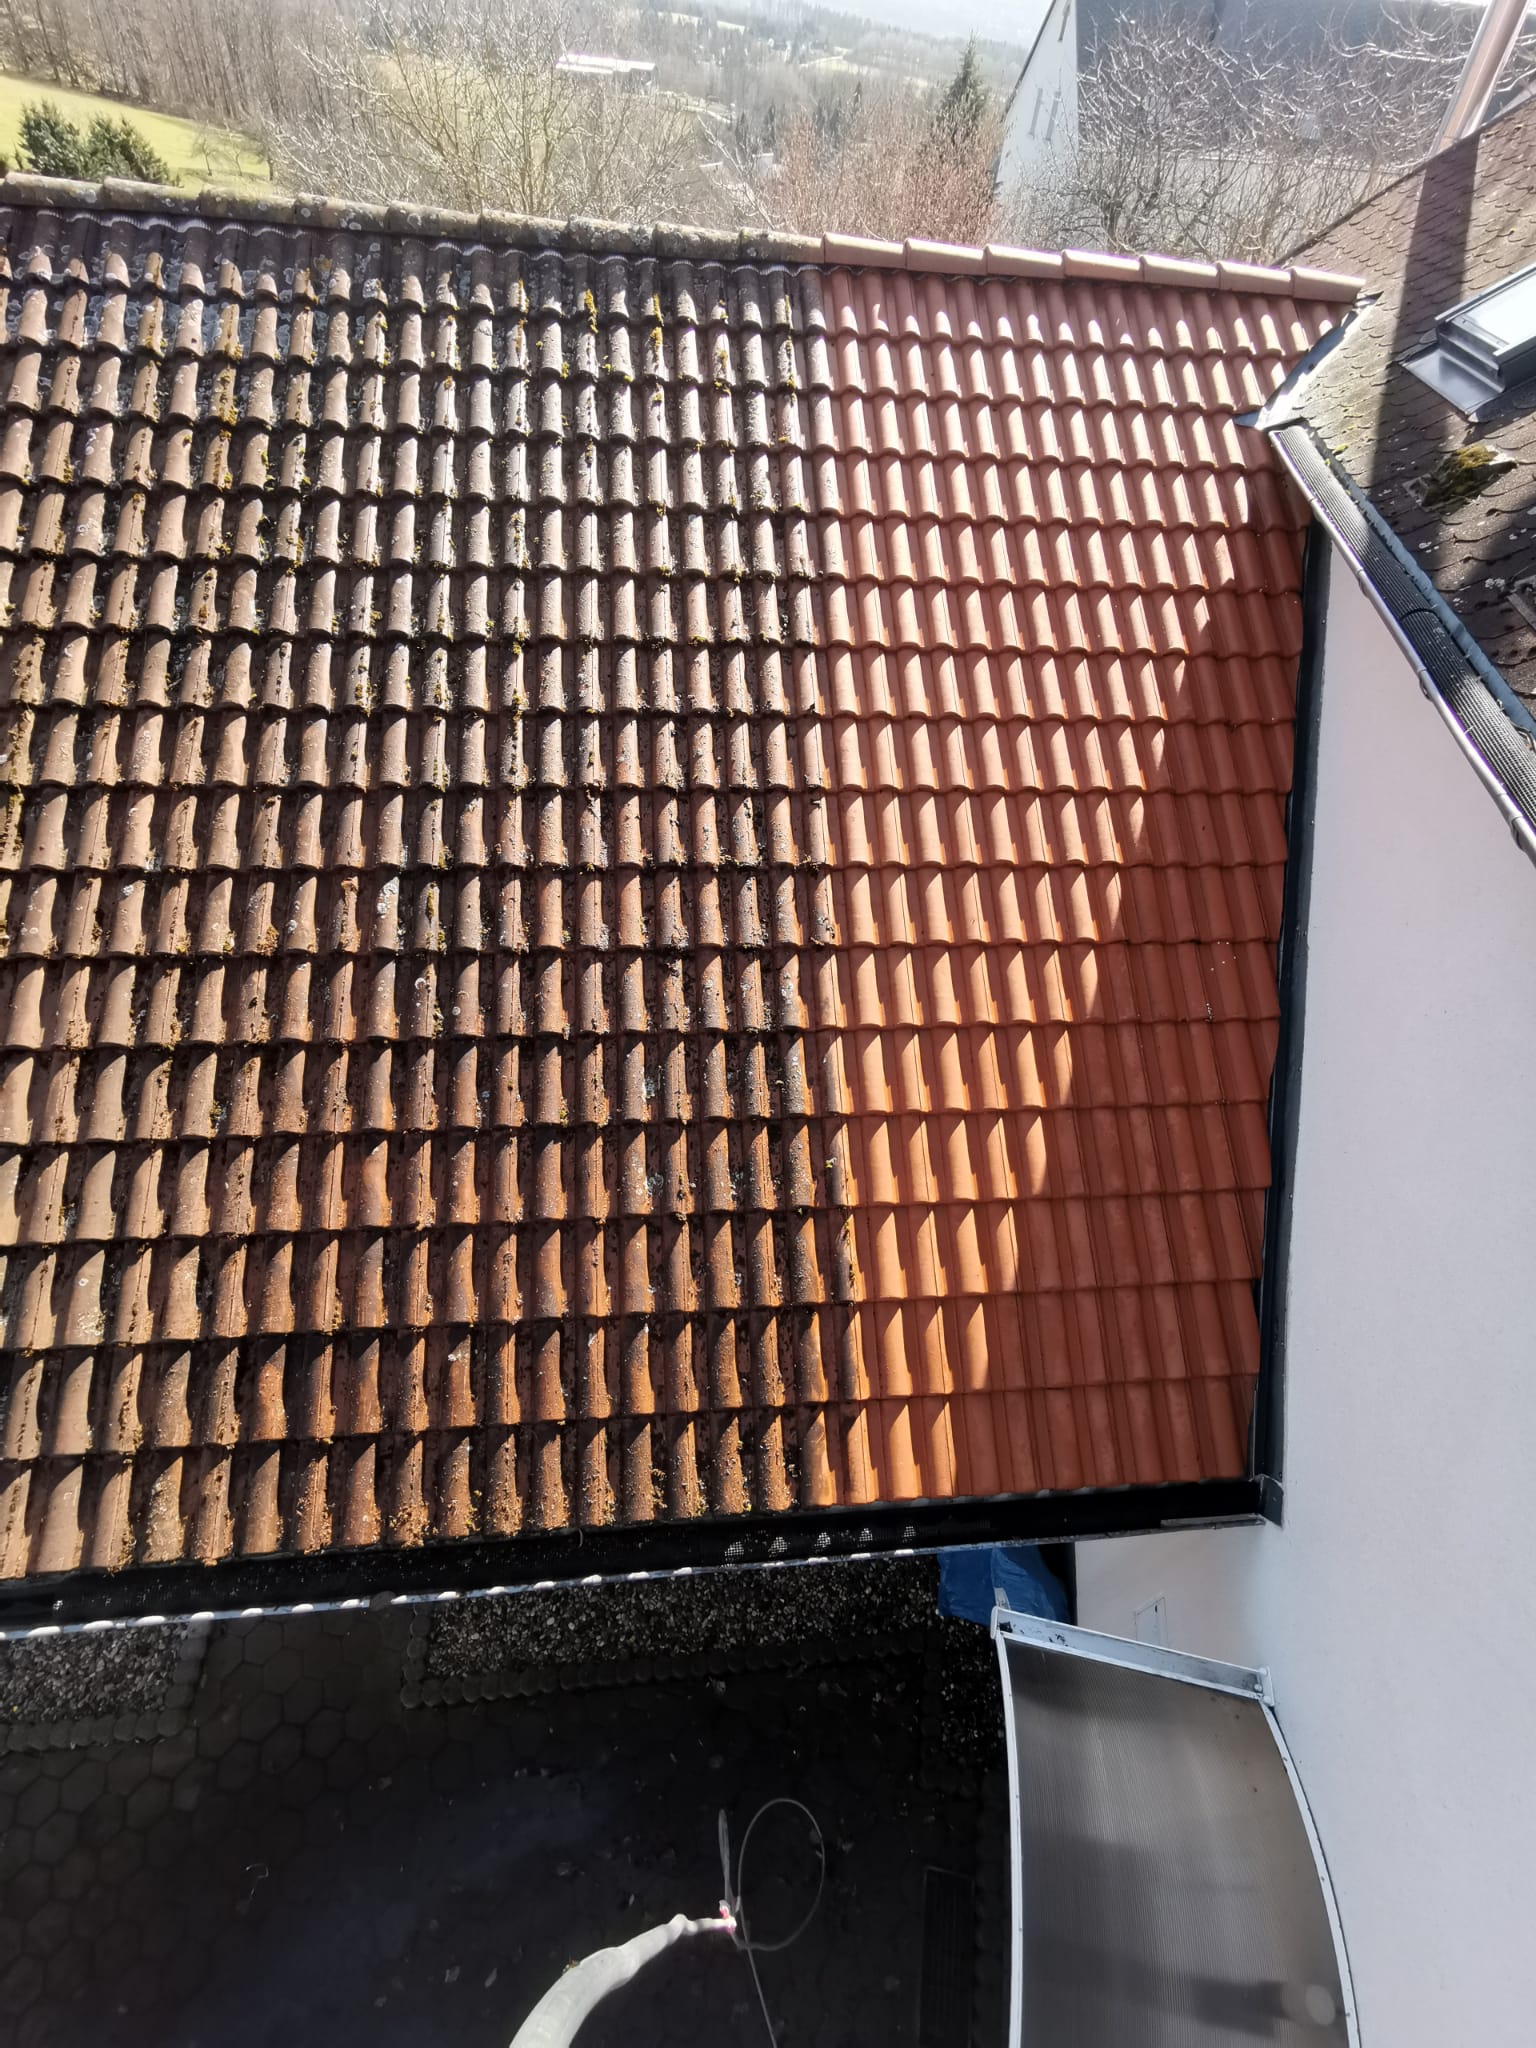 Dachreinigung & Entfernung von Ablagerungen auf Dachziegeln